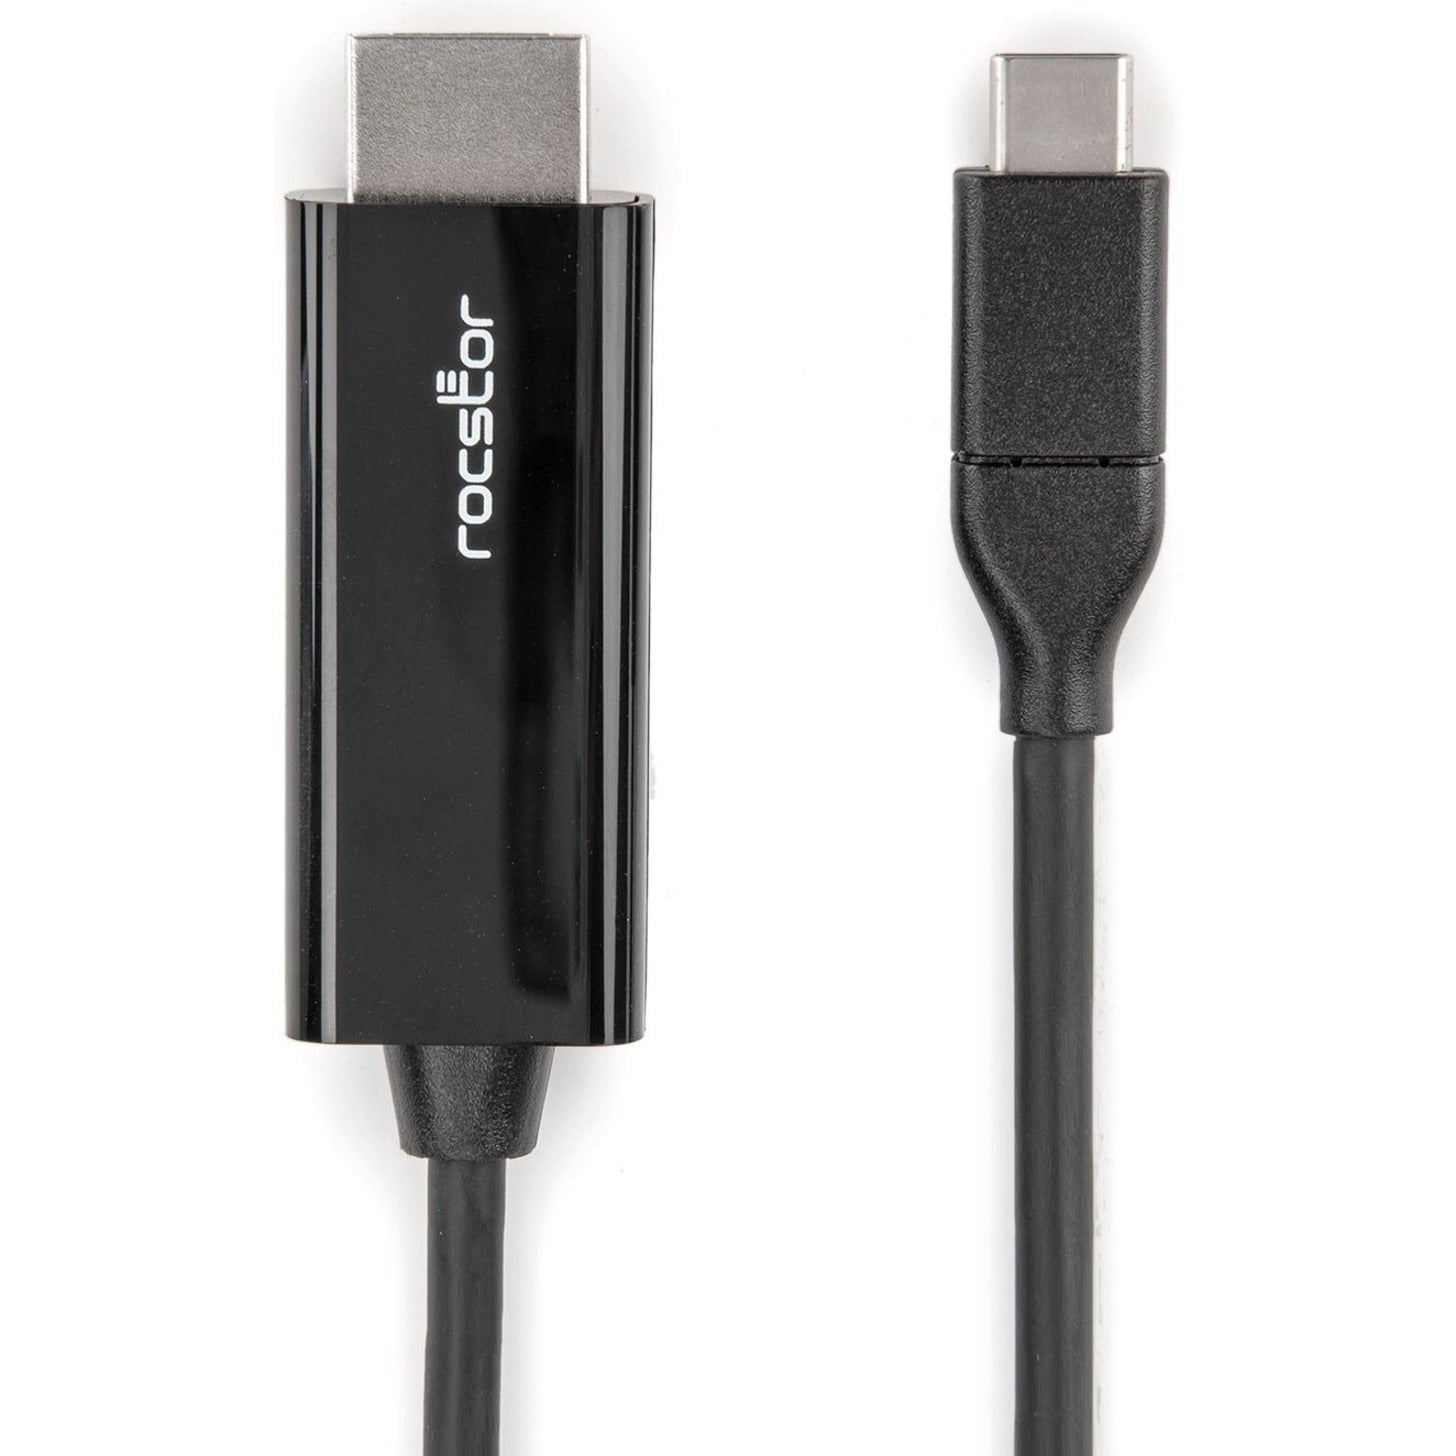 Rocstor Y10C293-B1 Premium USB-C to HDMI Cable - 4K 60Hz, Flexible, Reversible, HDCP 2.2, 6 ft, Black